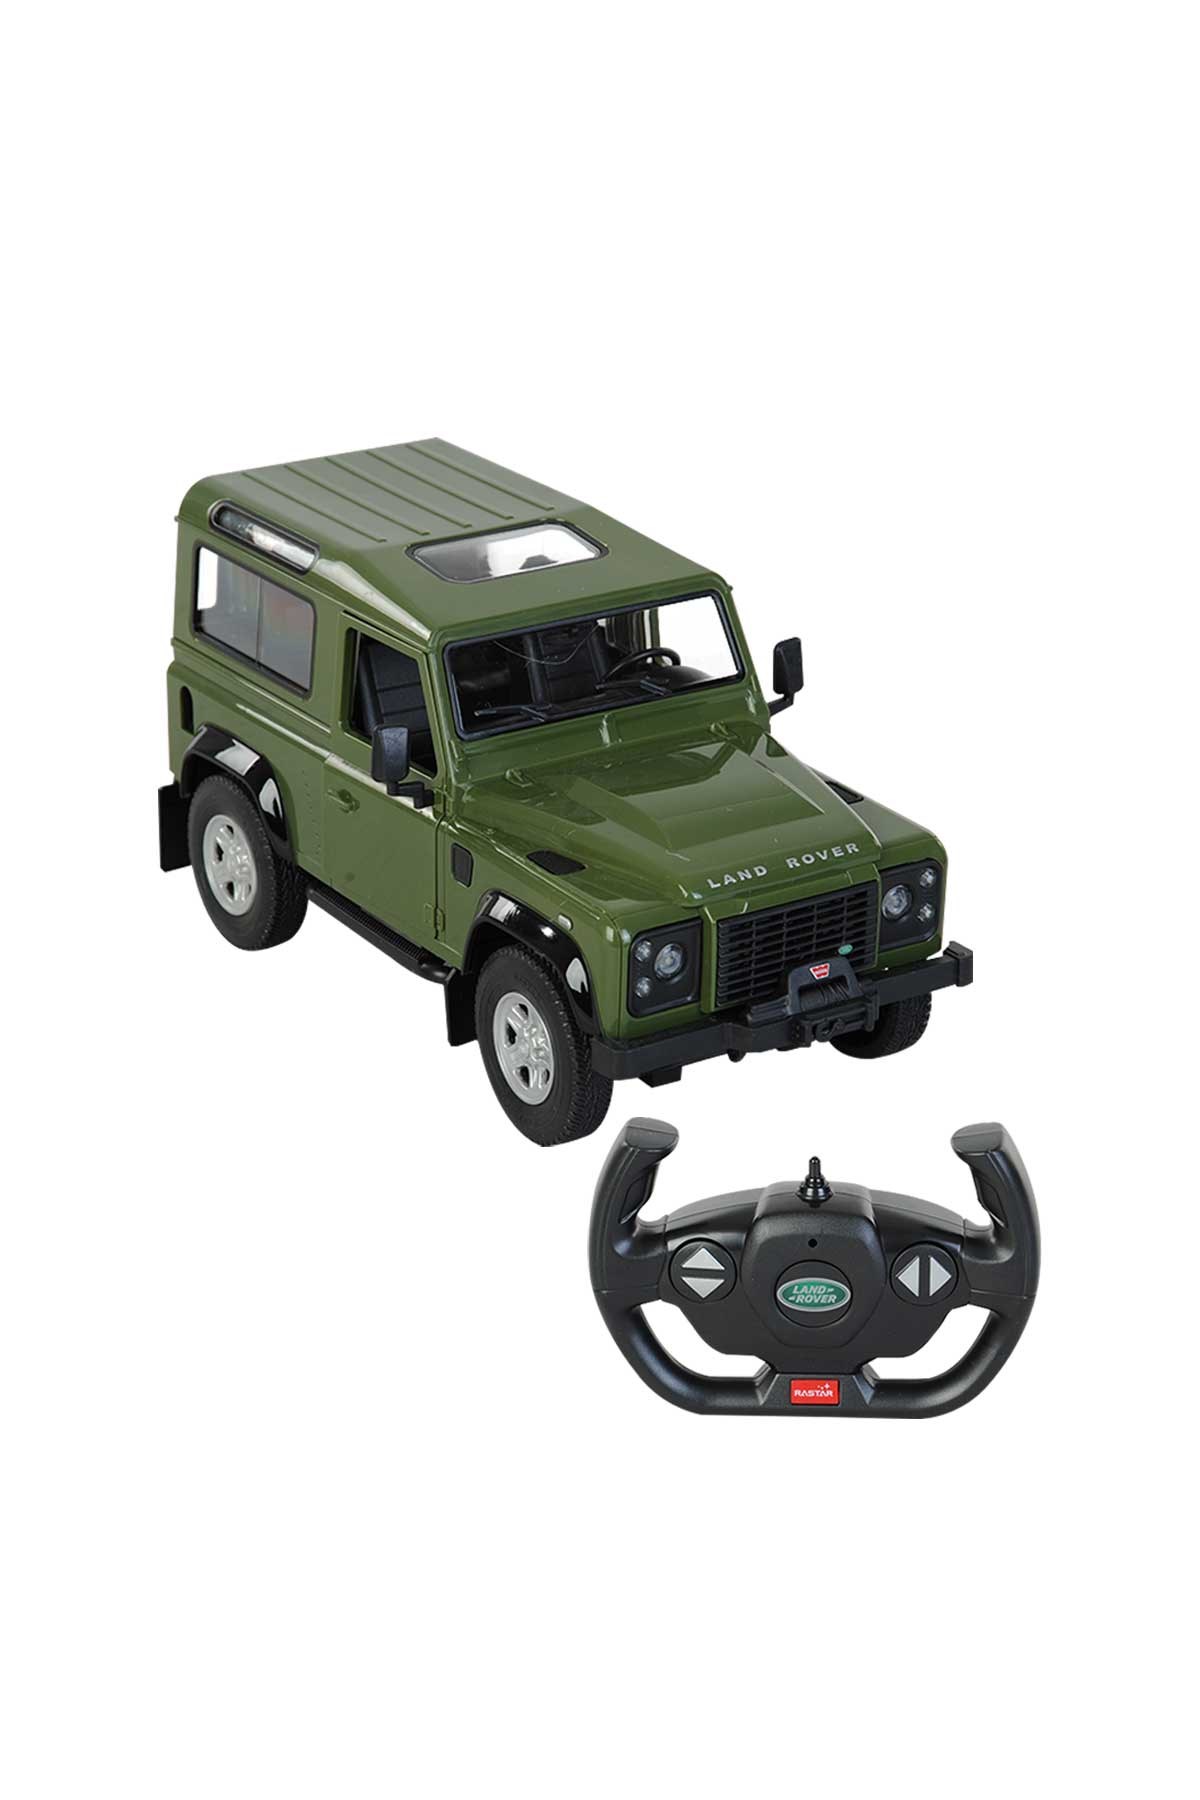 1:14 Land Rover Defender Uzaktan Kumandalı Araba